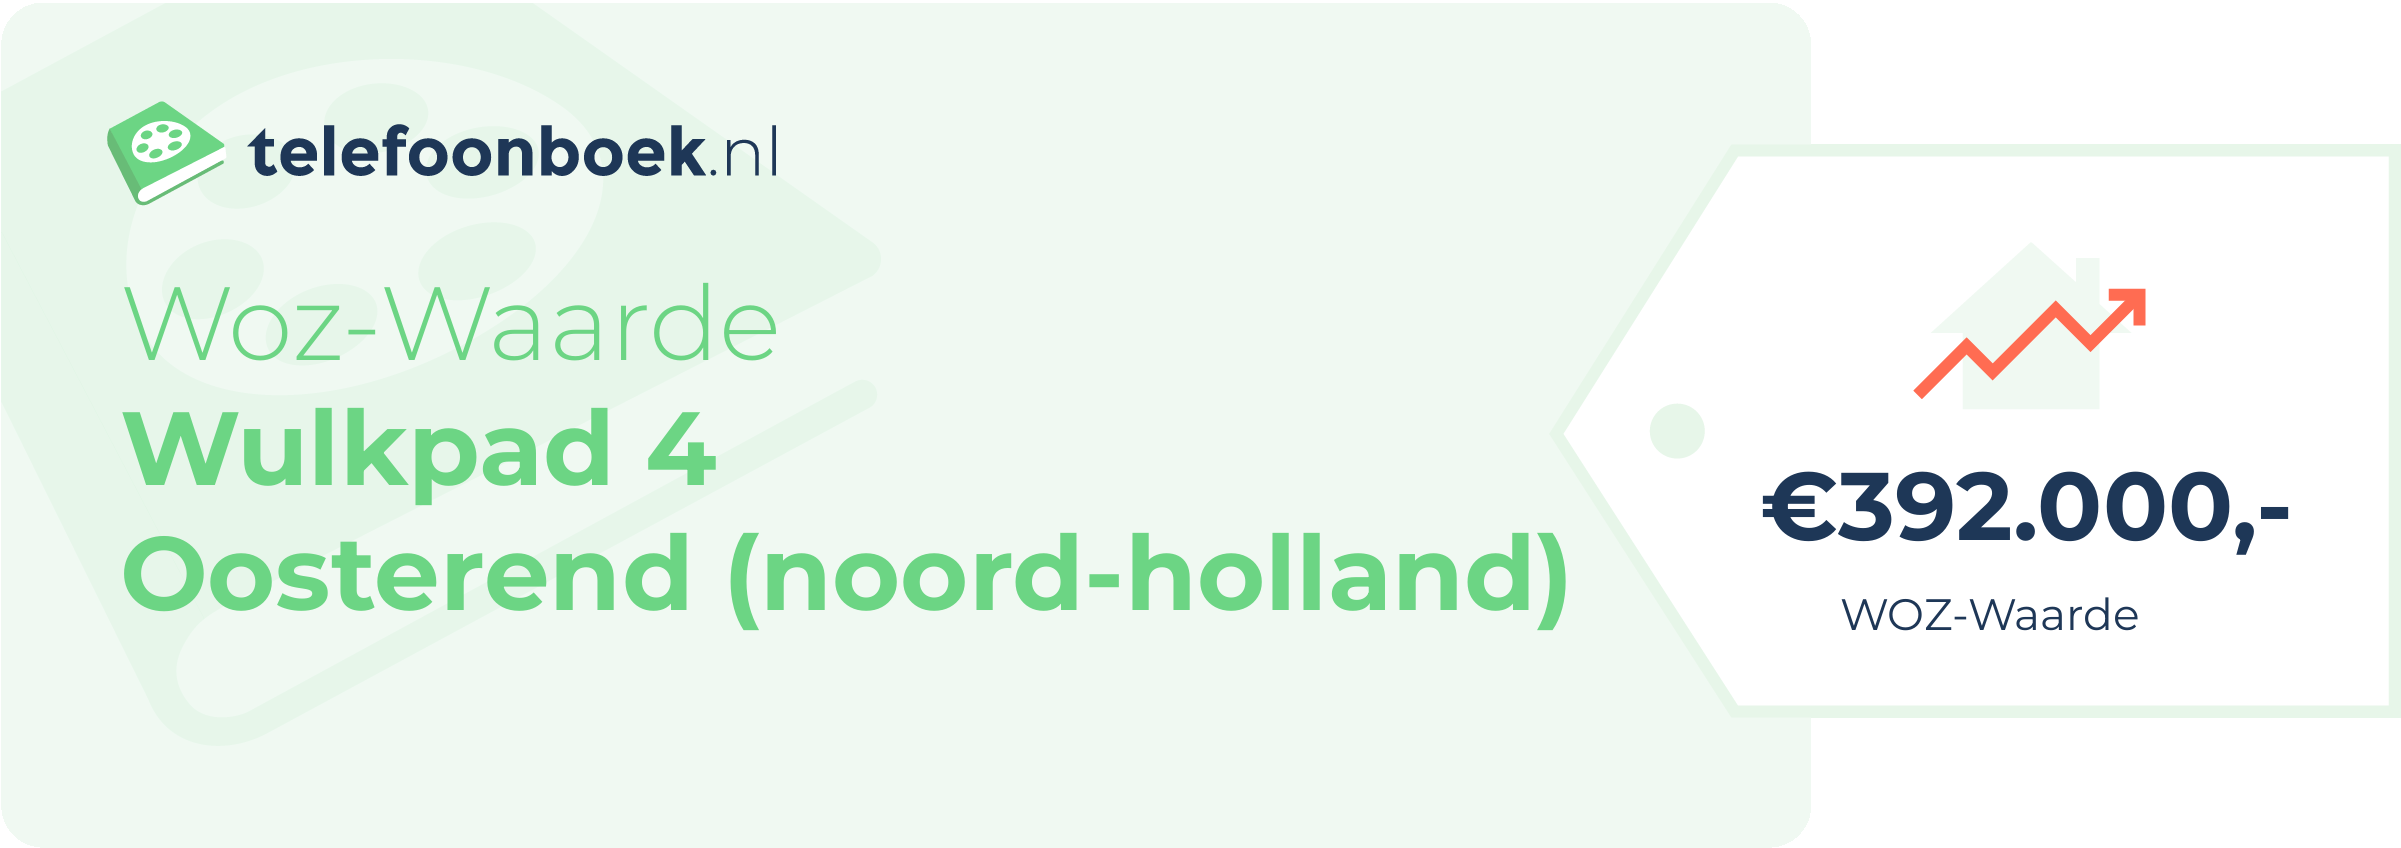 WOZ-waarde Wulkpad 4 Oosterend (Noord-Holland)